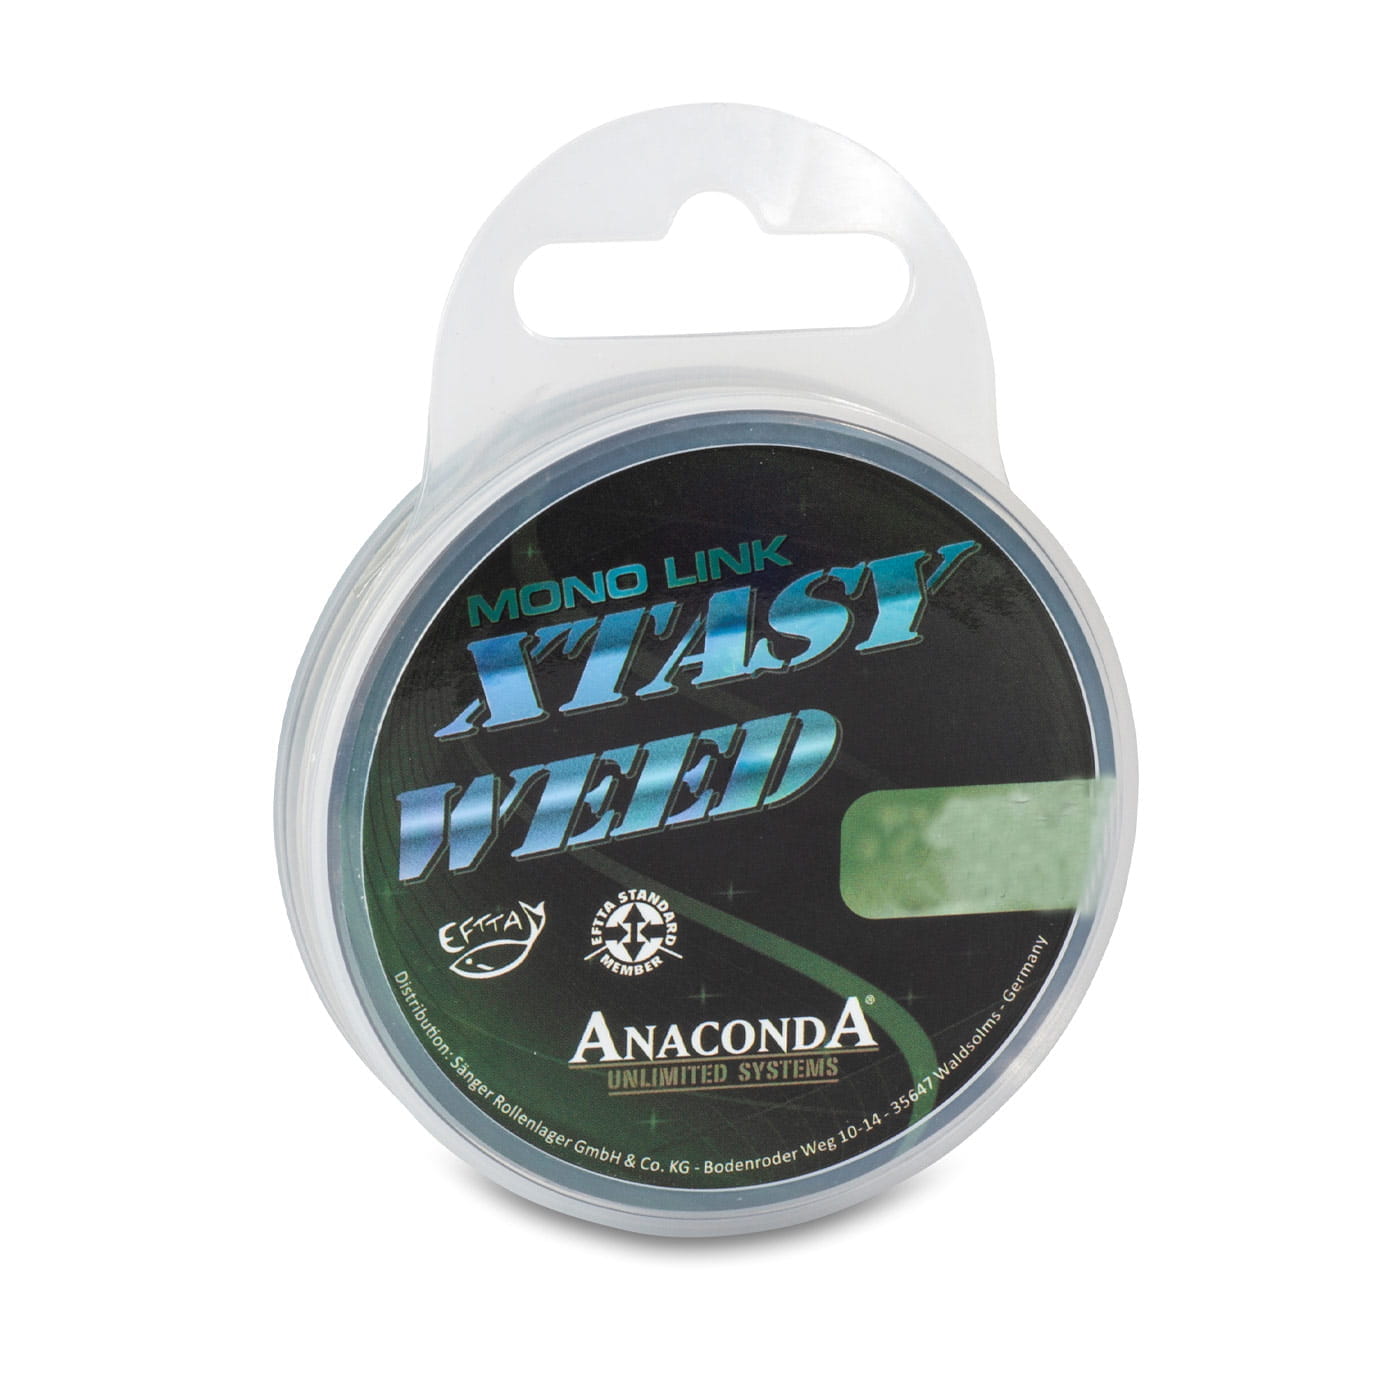 Anaconda Xtasy Weed Mono Link 50m